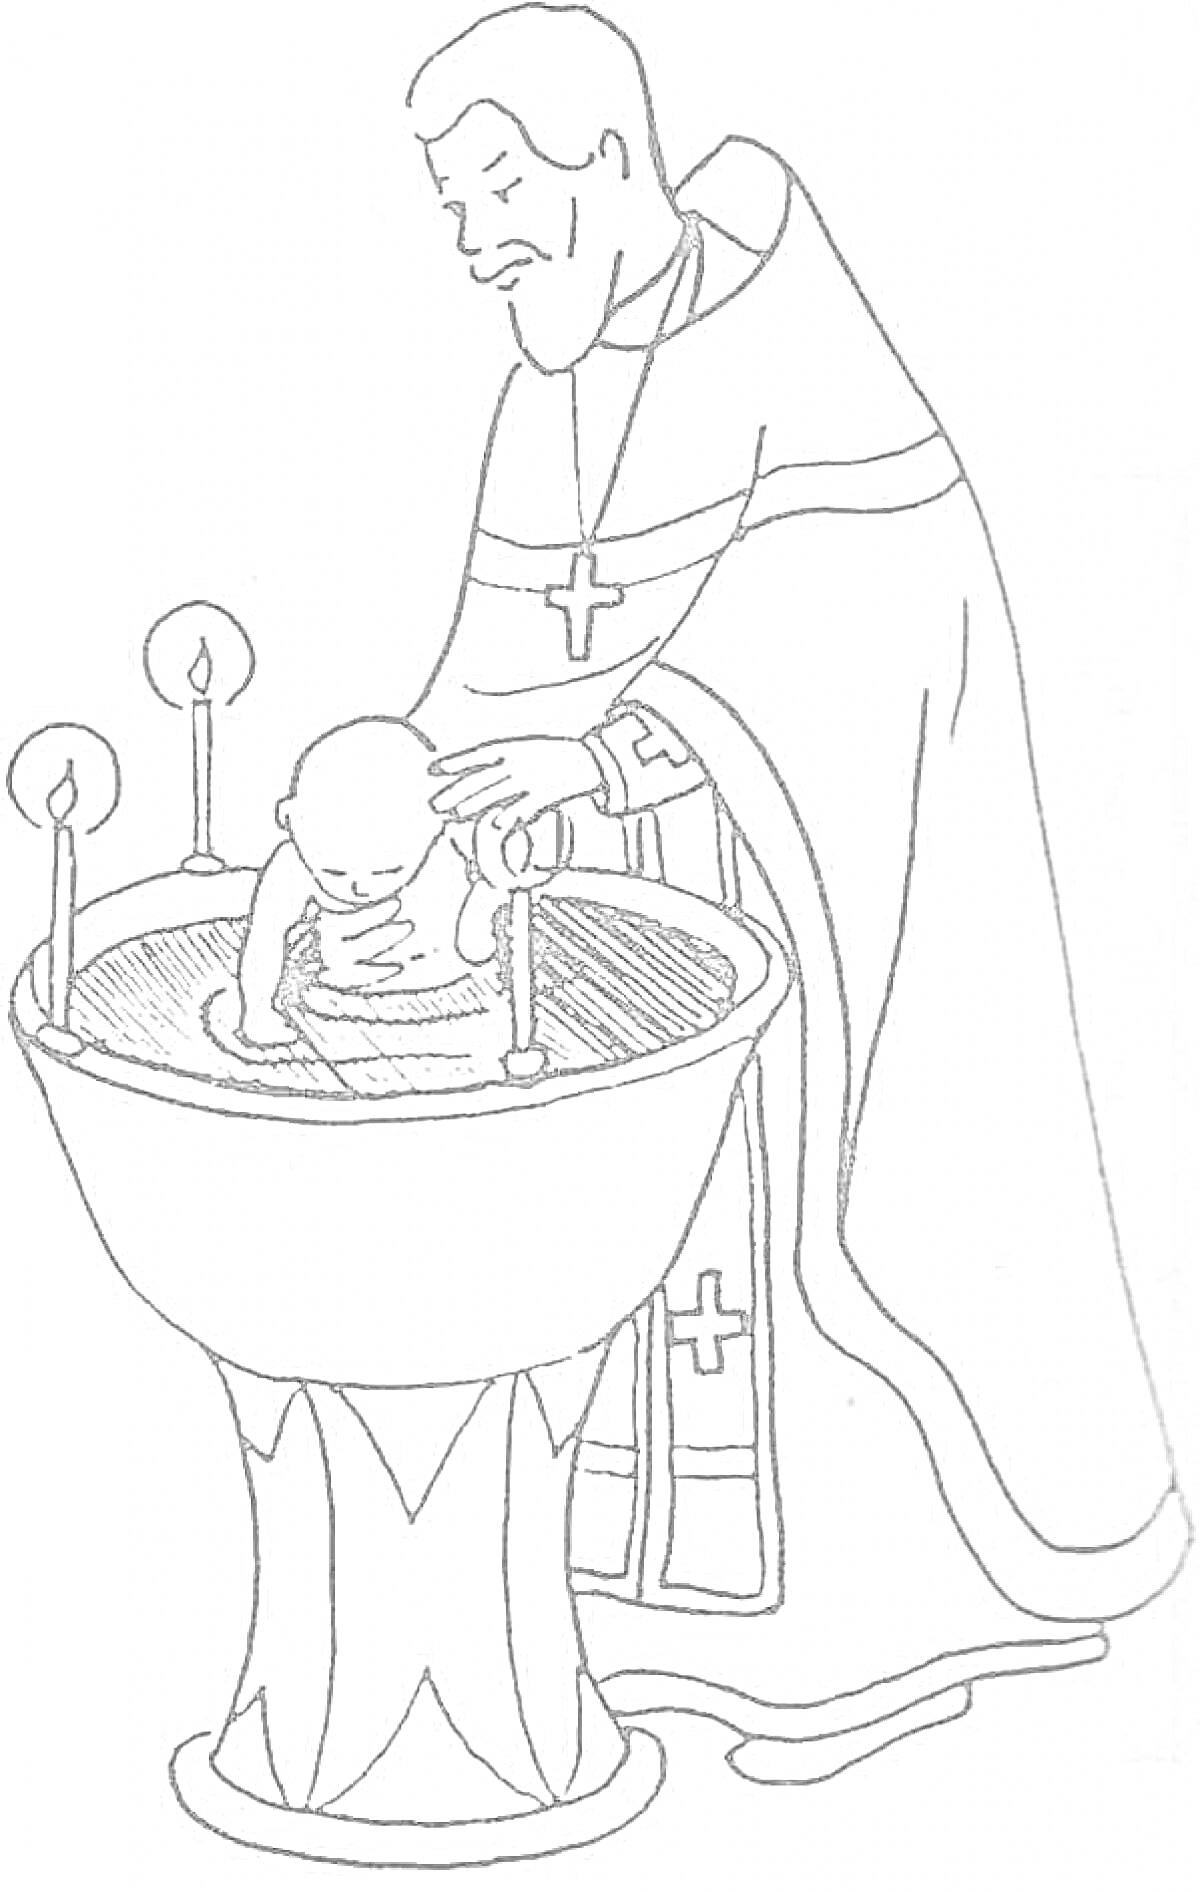 Раскраска Священник крестит младенца в купели с зажженными свечами